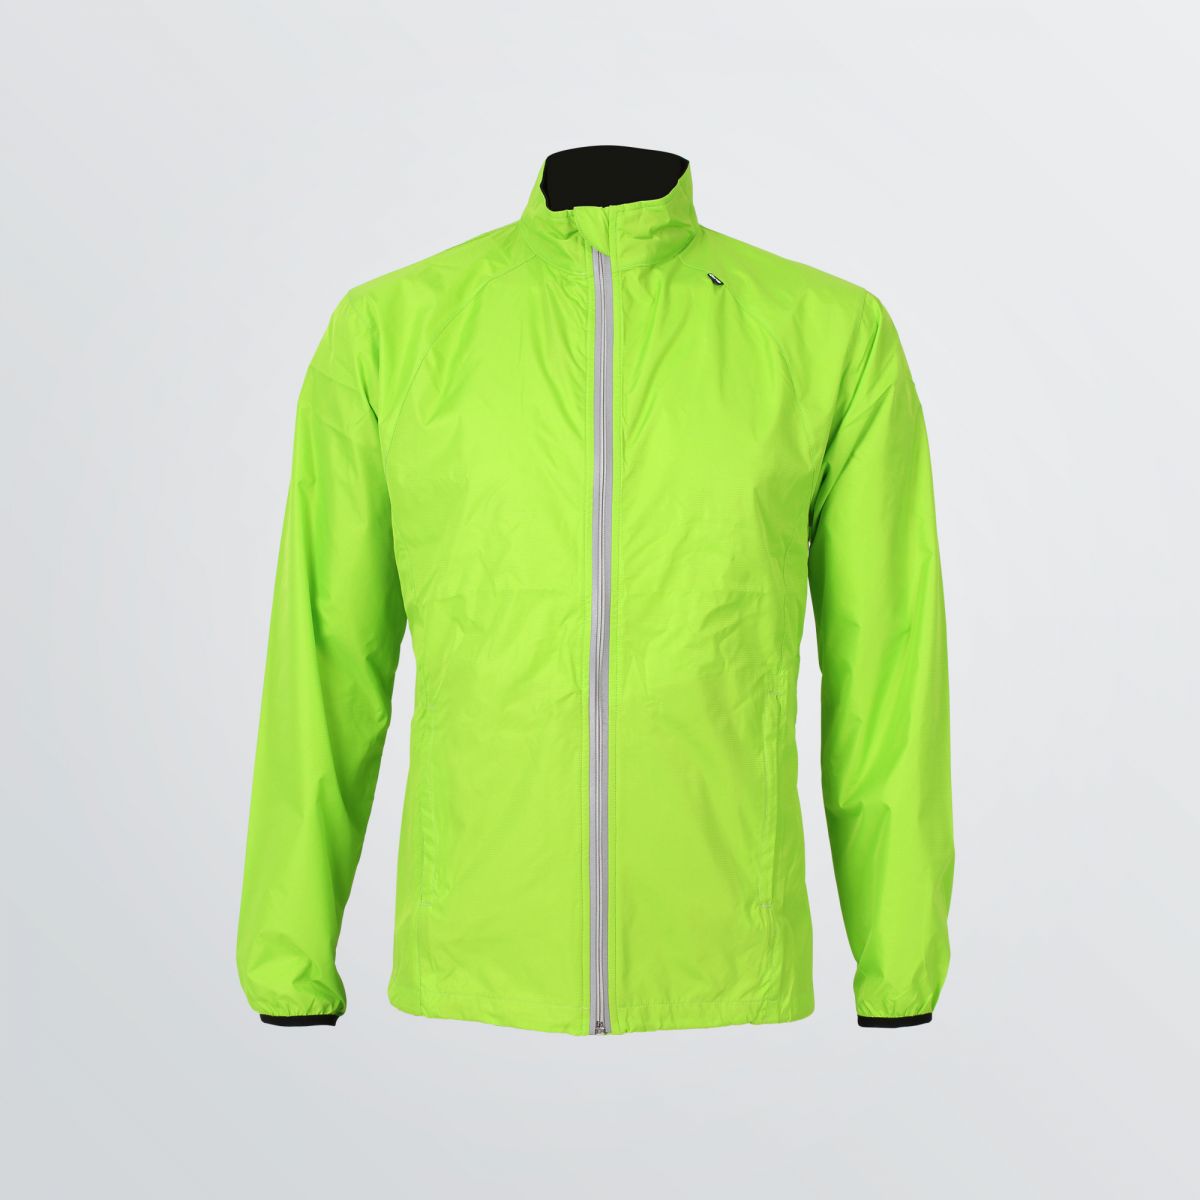 Individualisierbare Basic Sport Jacket aus atmungsaktivem und windabeweisendem Funktionsmaterial als Produktbeispiel in neongrün- Frontansicht